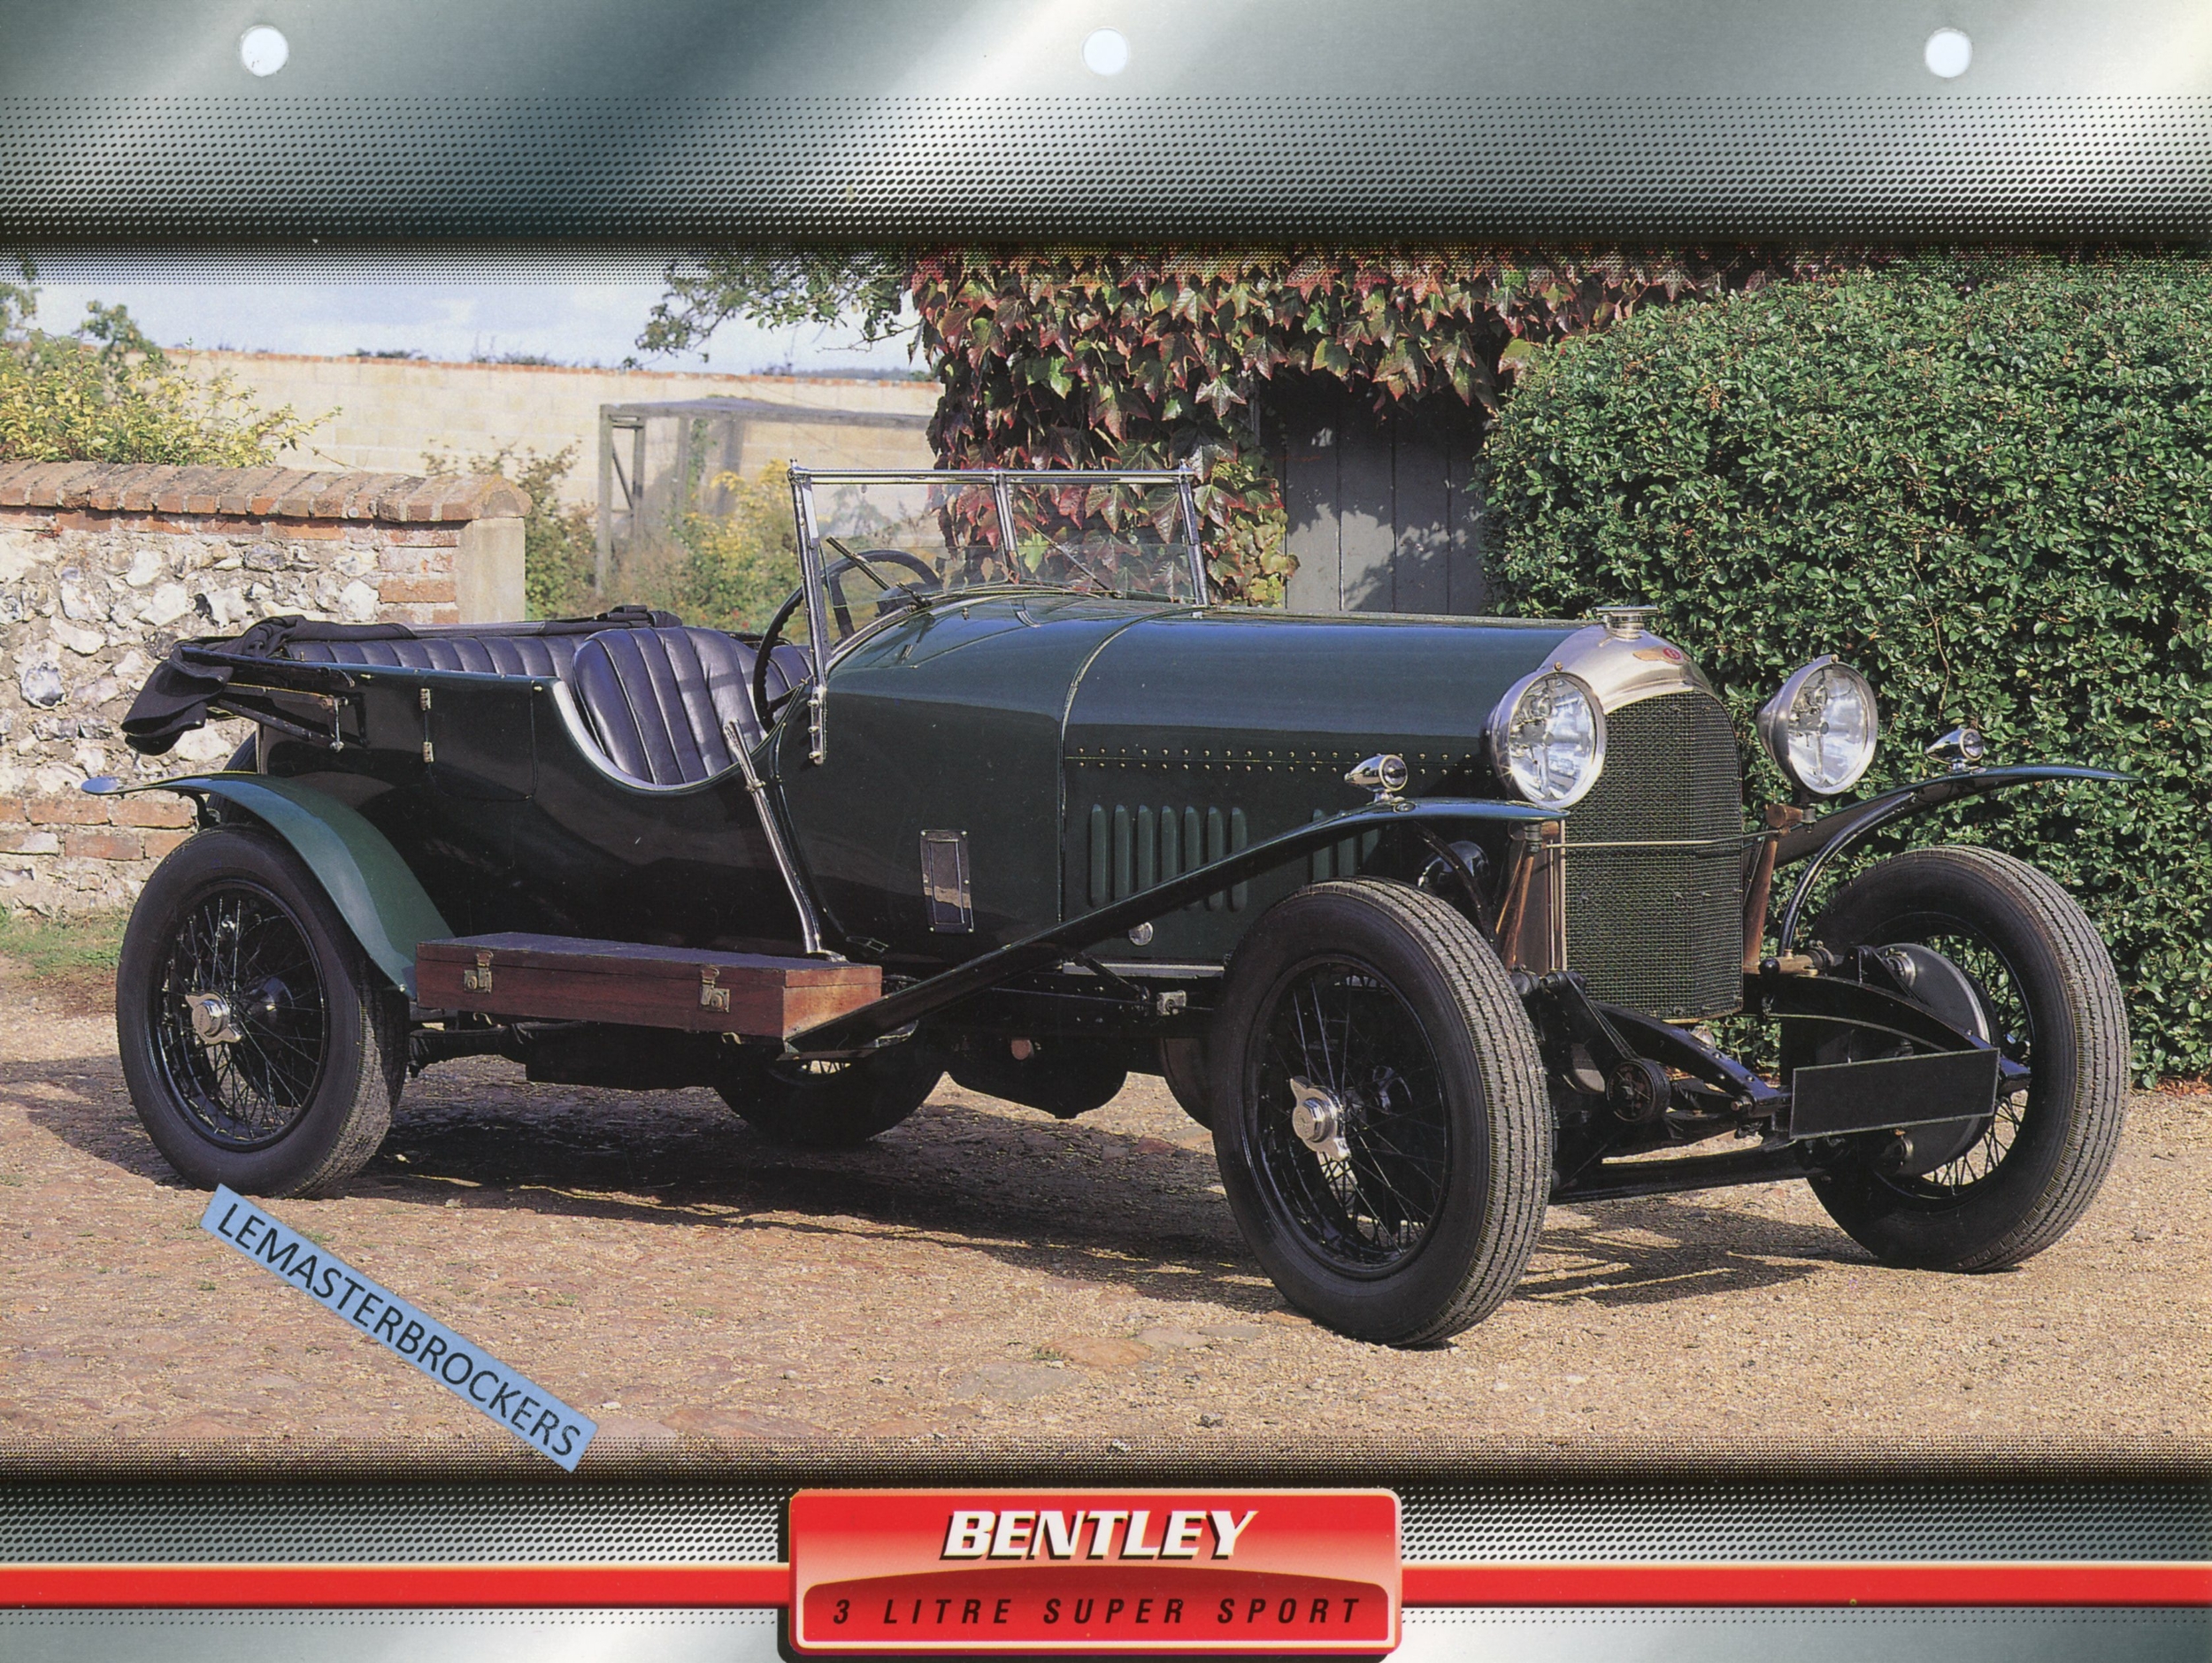 BENTLEY 3 LITRE SUPER SPORT 1923 - FICHE TECHNIQUE - FICHE AUTO - ATLAS LITTÉRATURE AUTOMOBILE